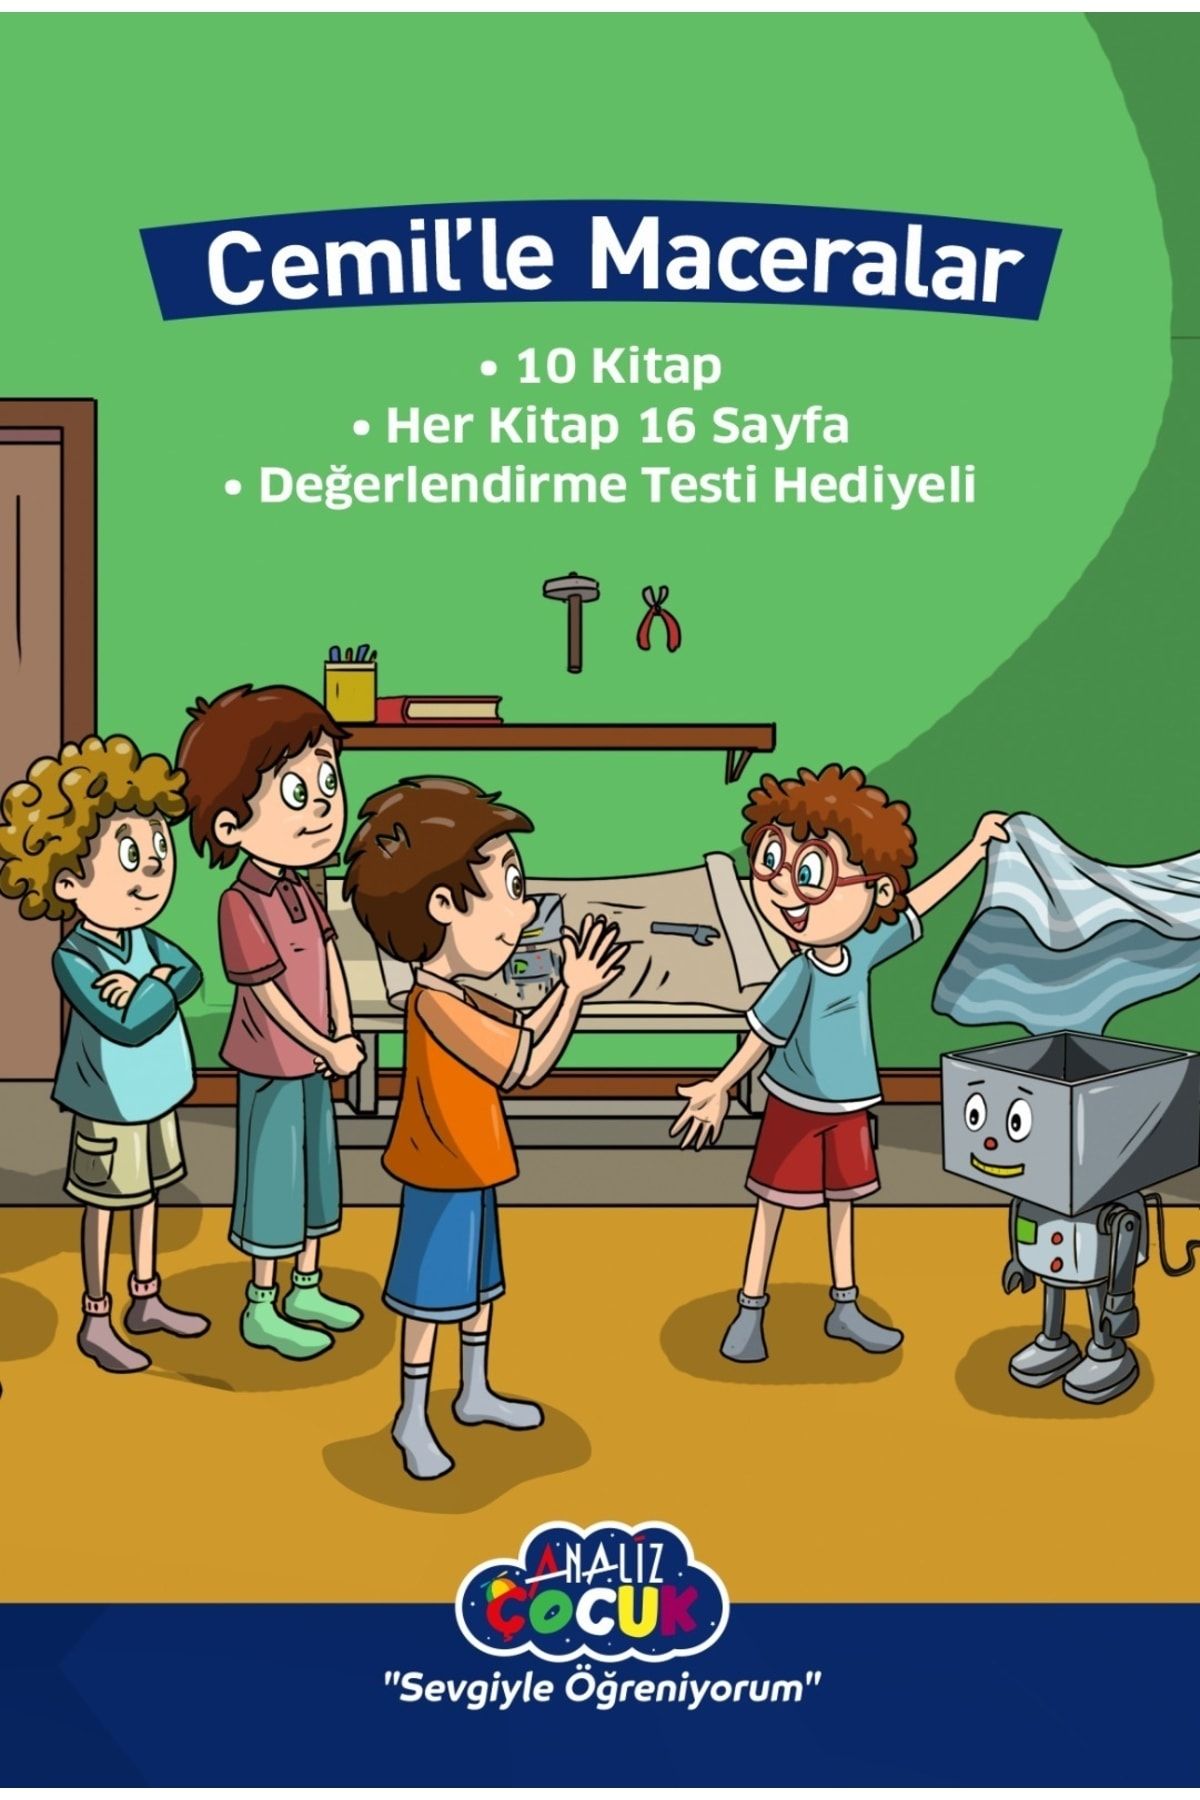 Analiz Yayınları Cemil'le Maceralar Serisi Hikaye Seti 10'lu